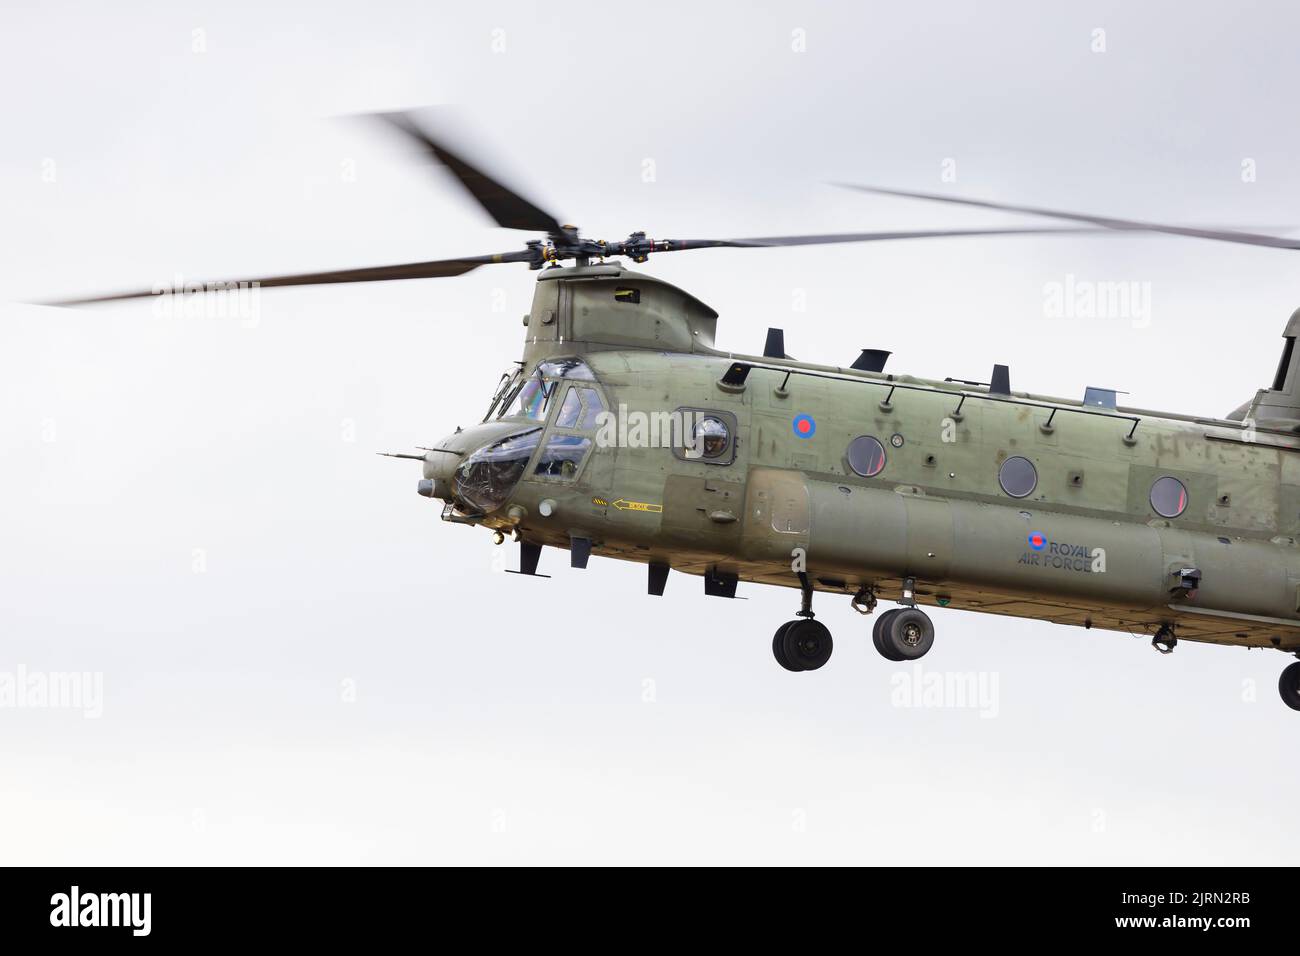 Boeing CH-47D Chinook-Schwerlasthubschrauber des Royal Air Force Chinook Display Teams mit Sitz bei RAF Odiham, Familientag der RAF Syerston. Stockfoto